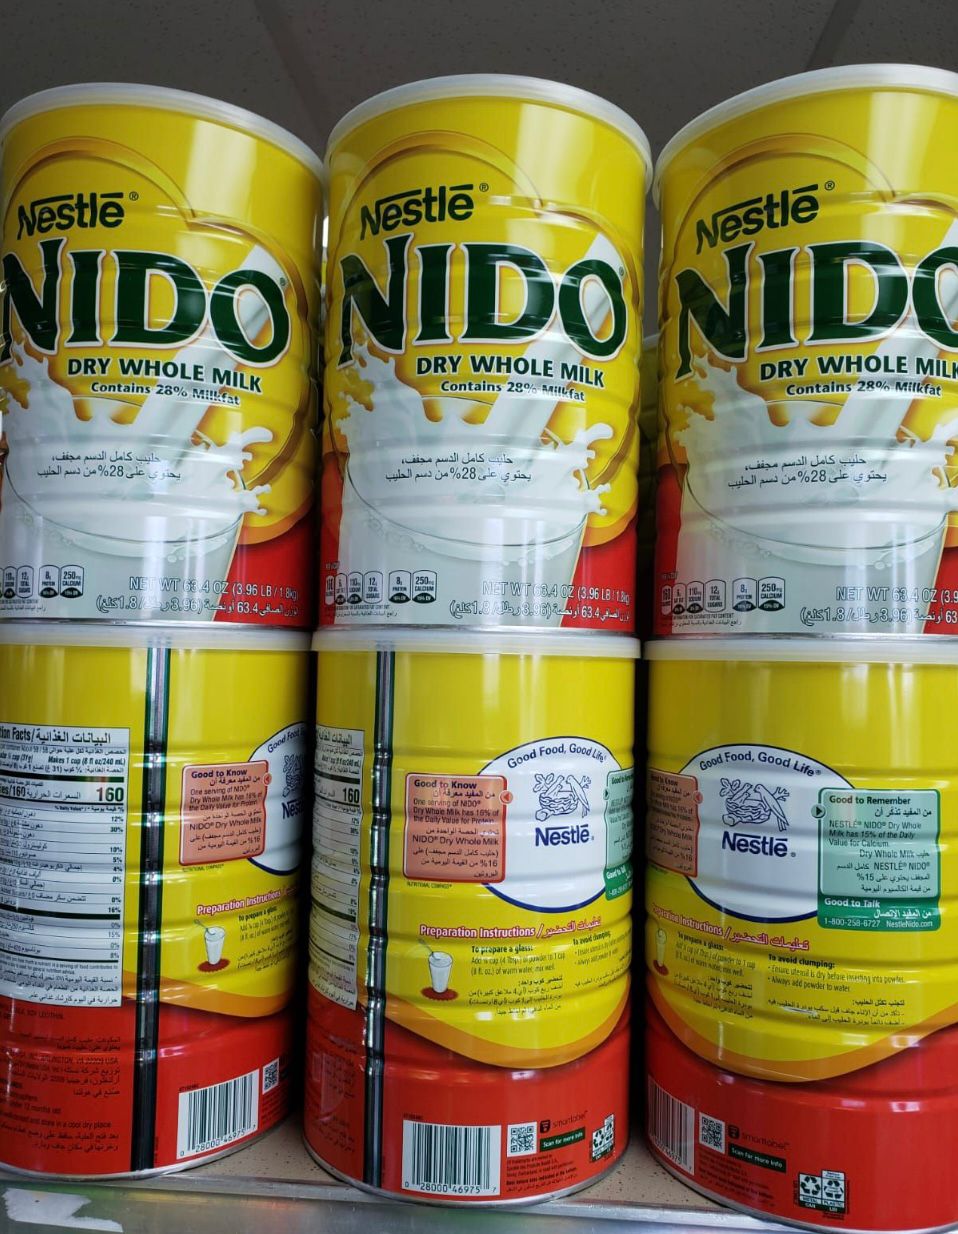 Nestle NIDO Dry Whole Milk